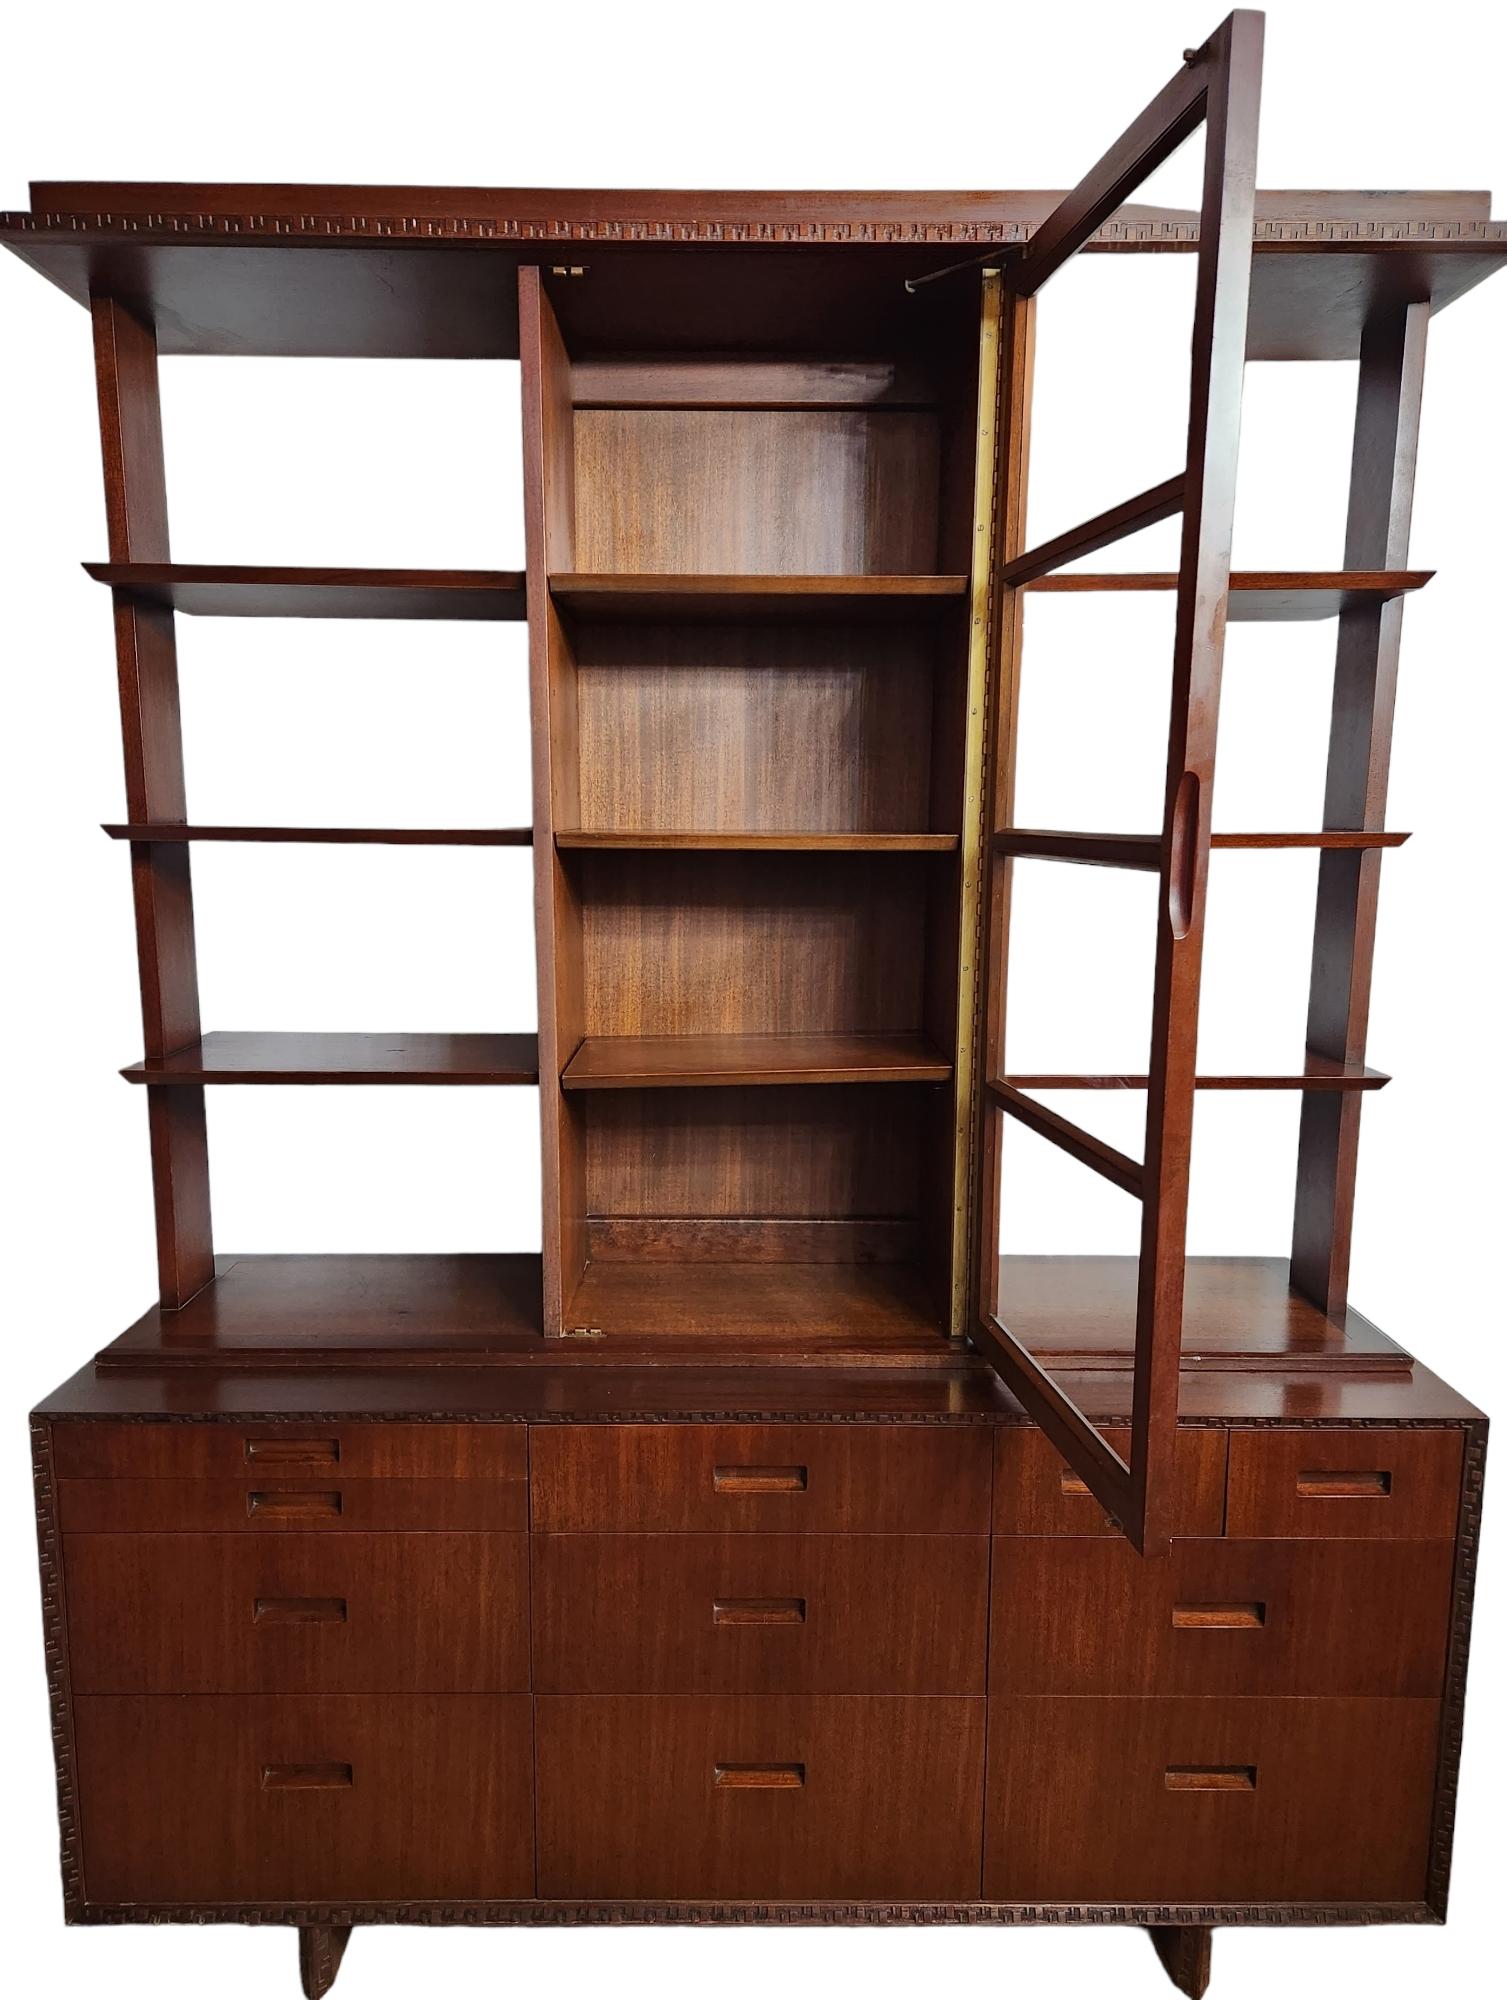 Magnifique buffet / vaisselier en acajou conçu par Frank Lloyd Wright pour Heritage Henredon en 1955 dans le cadre de sa ligne Taliesin.
Le tiroir du coin supérieur droit est marqué à l'intérieur de la marque Heritage-Henredon et de l'emblème de